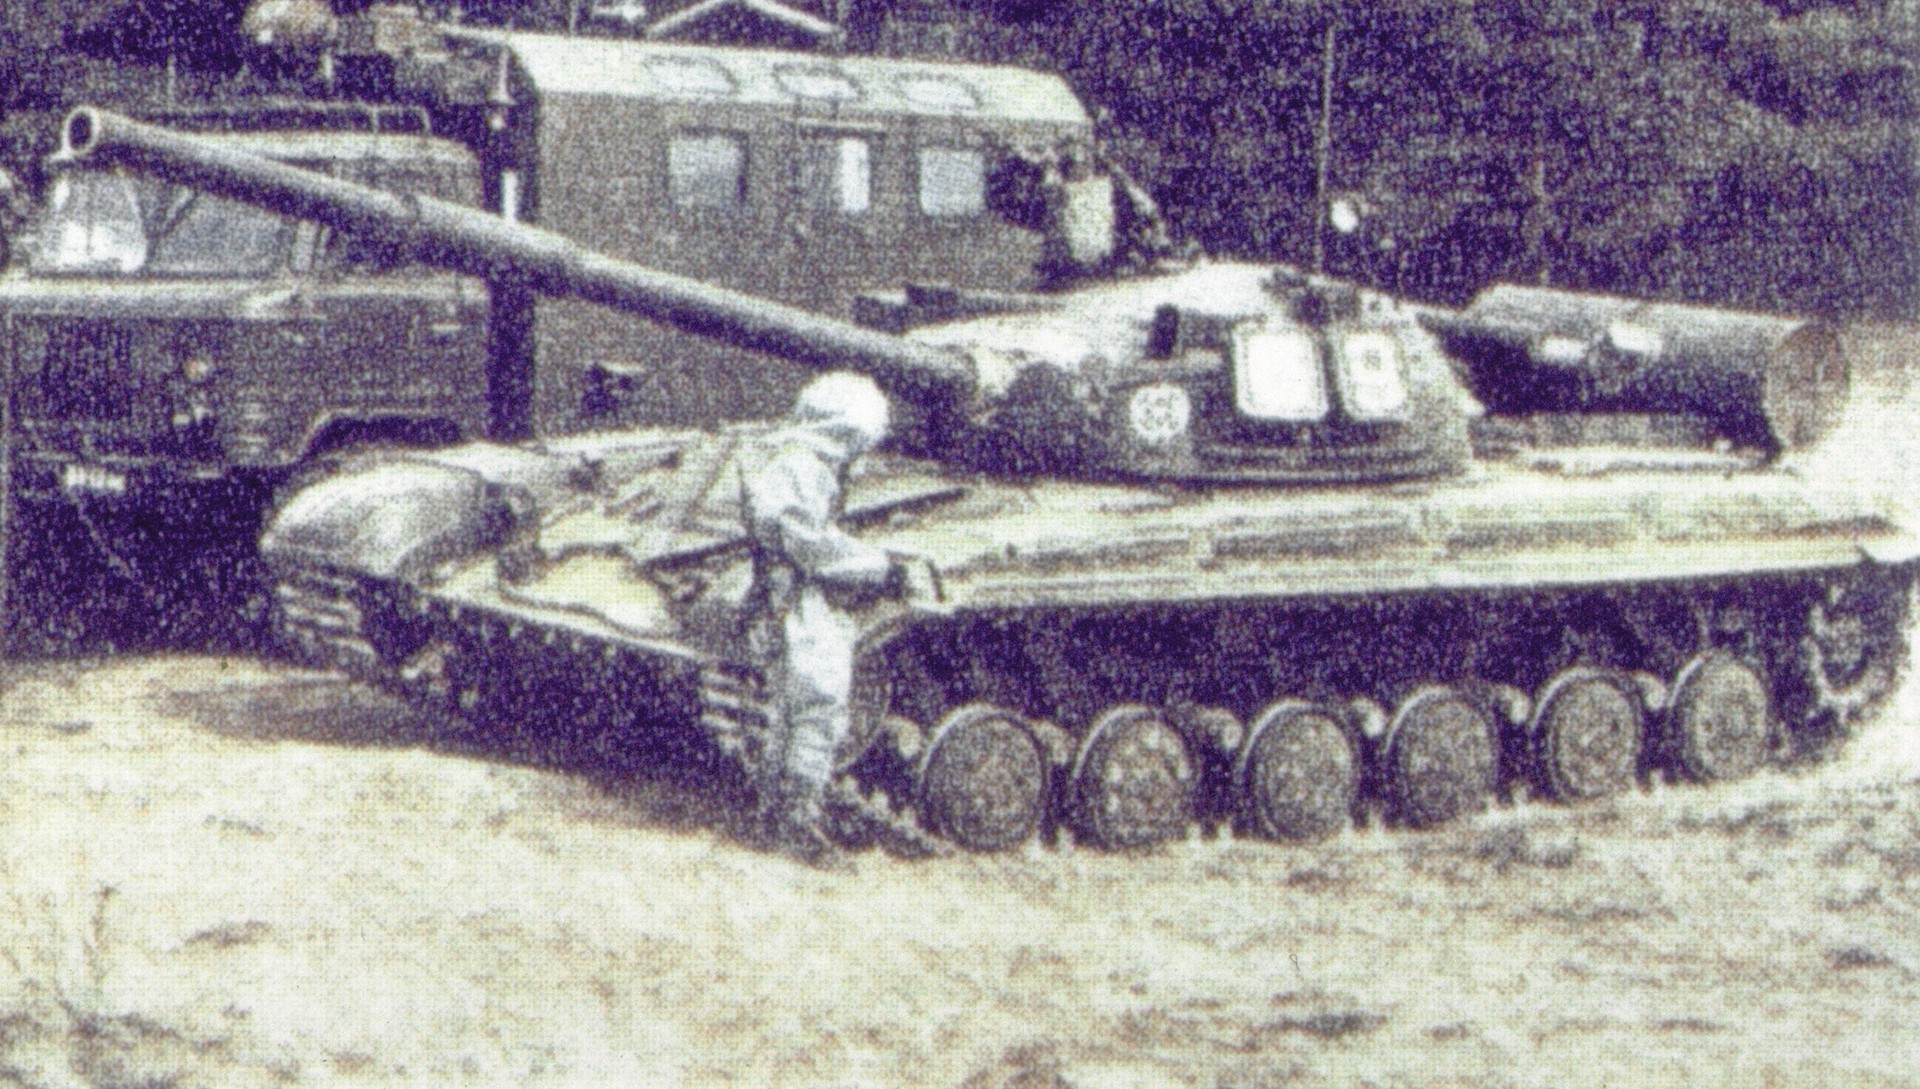 Un tanque soviético T-64 en la década los 80. La imagen fue tomada durante un ejercicio de descontaminación del ejército soviético.